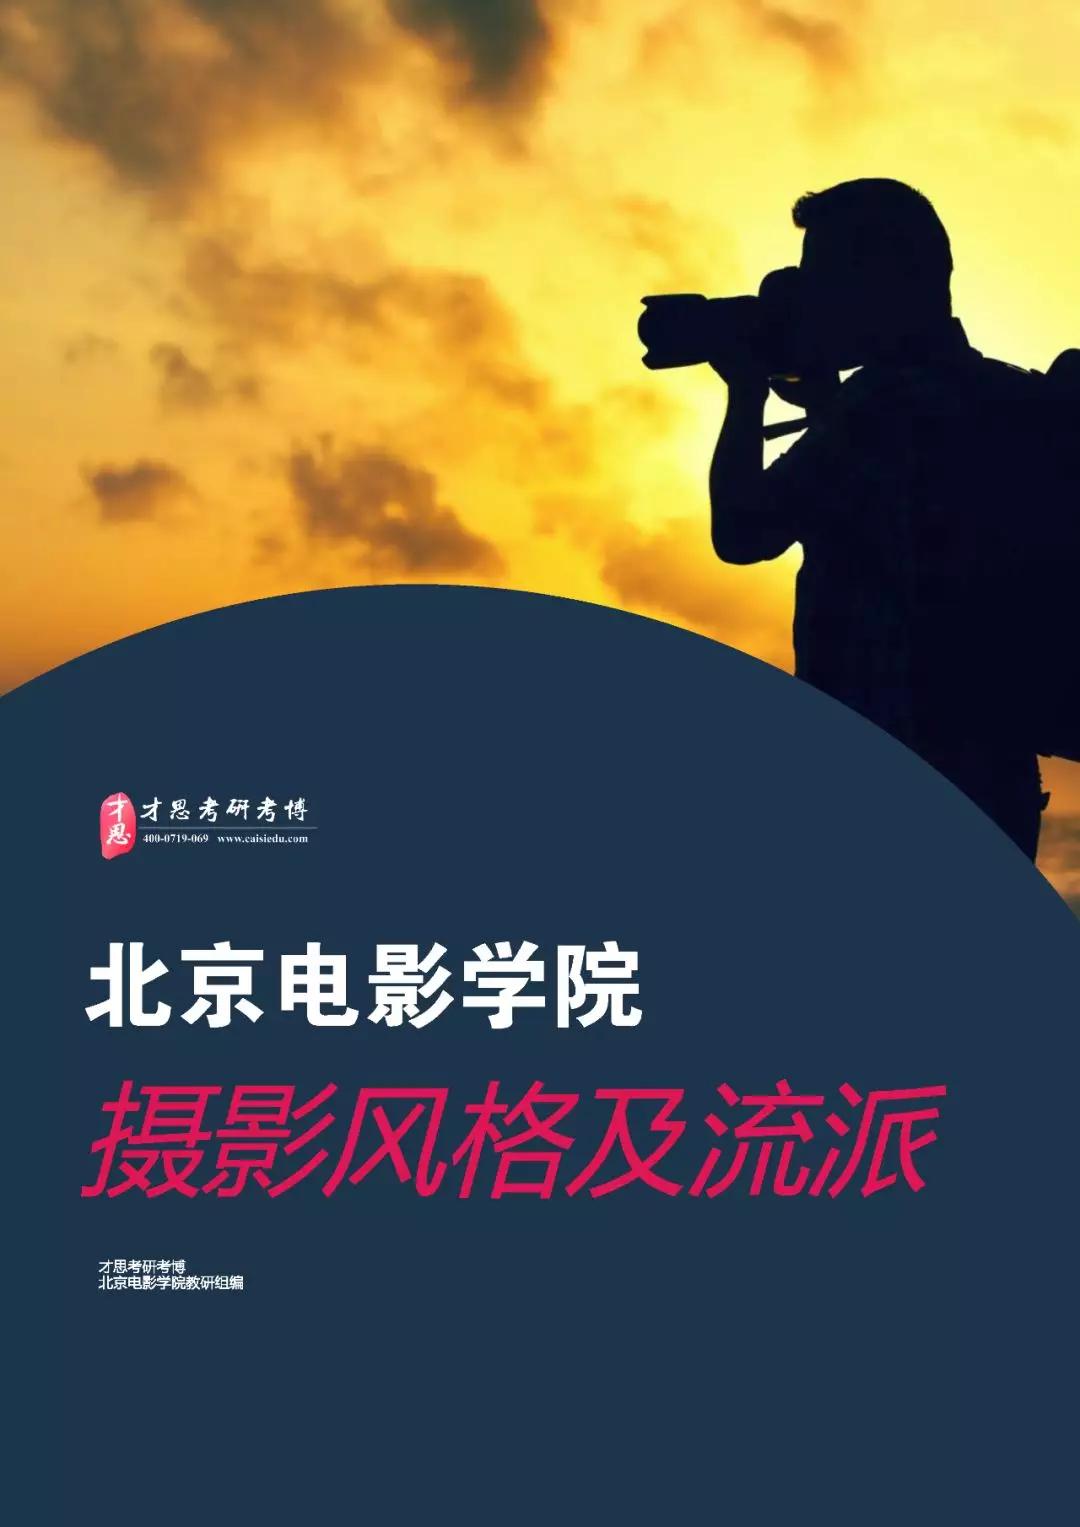 2020年北京电影学院摄影系电影摄影与制作(专硕)考研难度分析